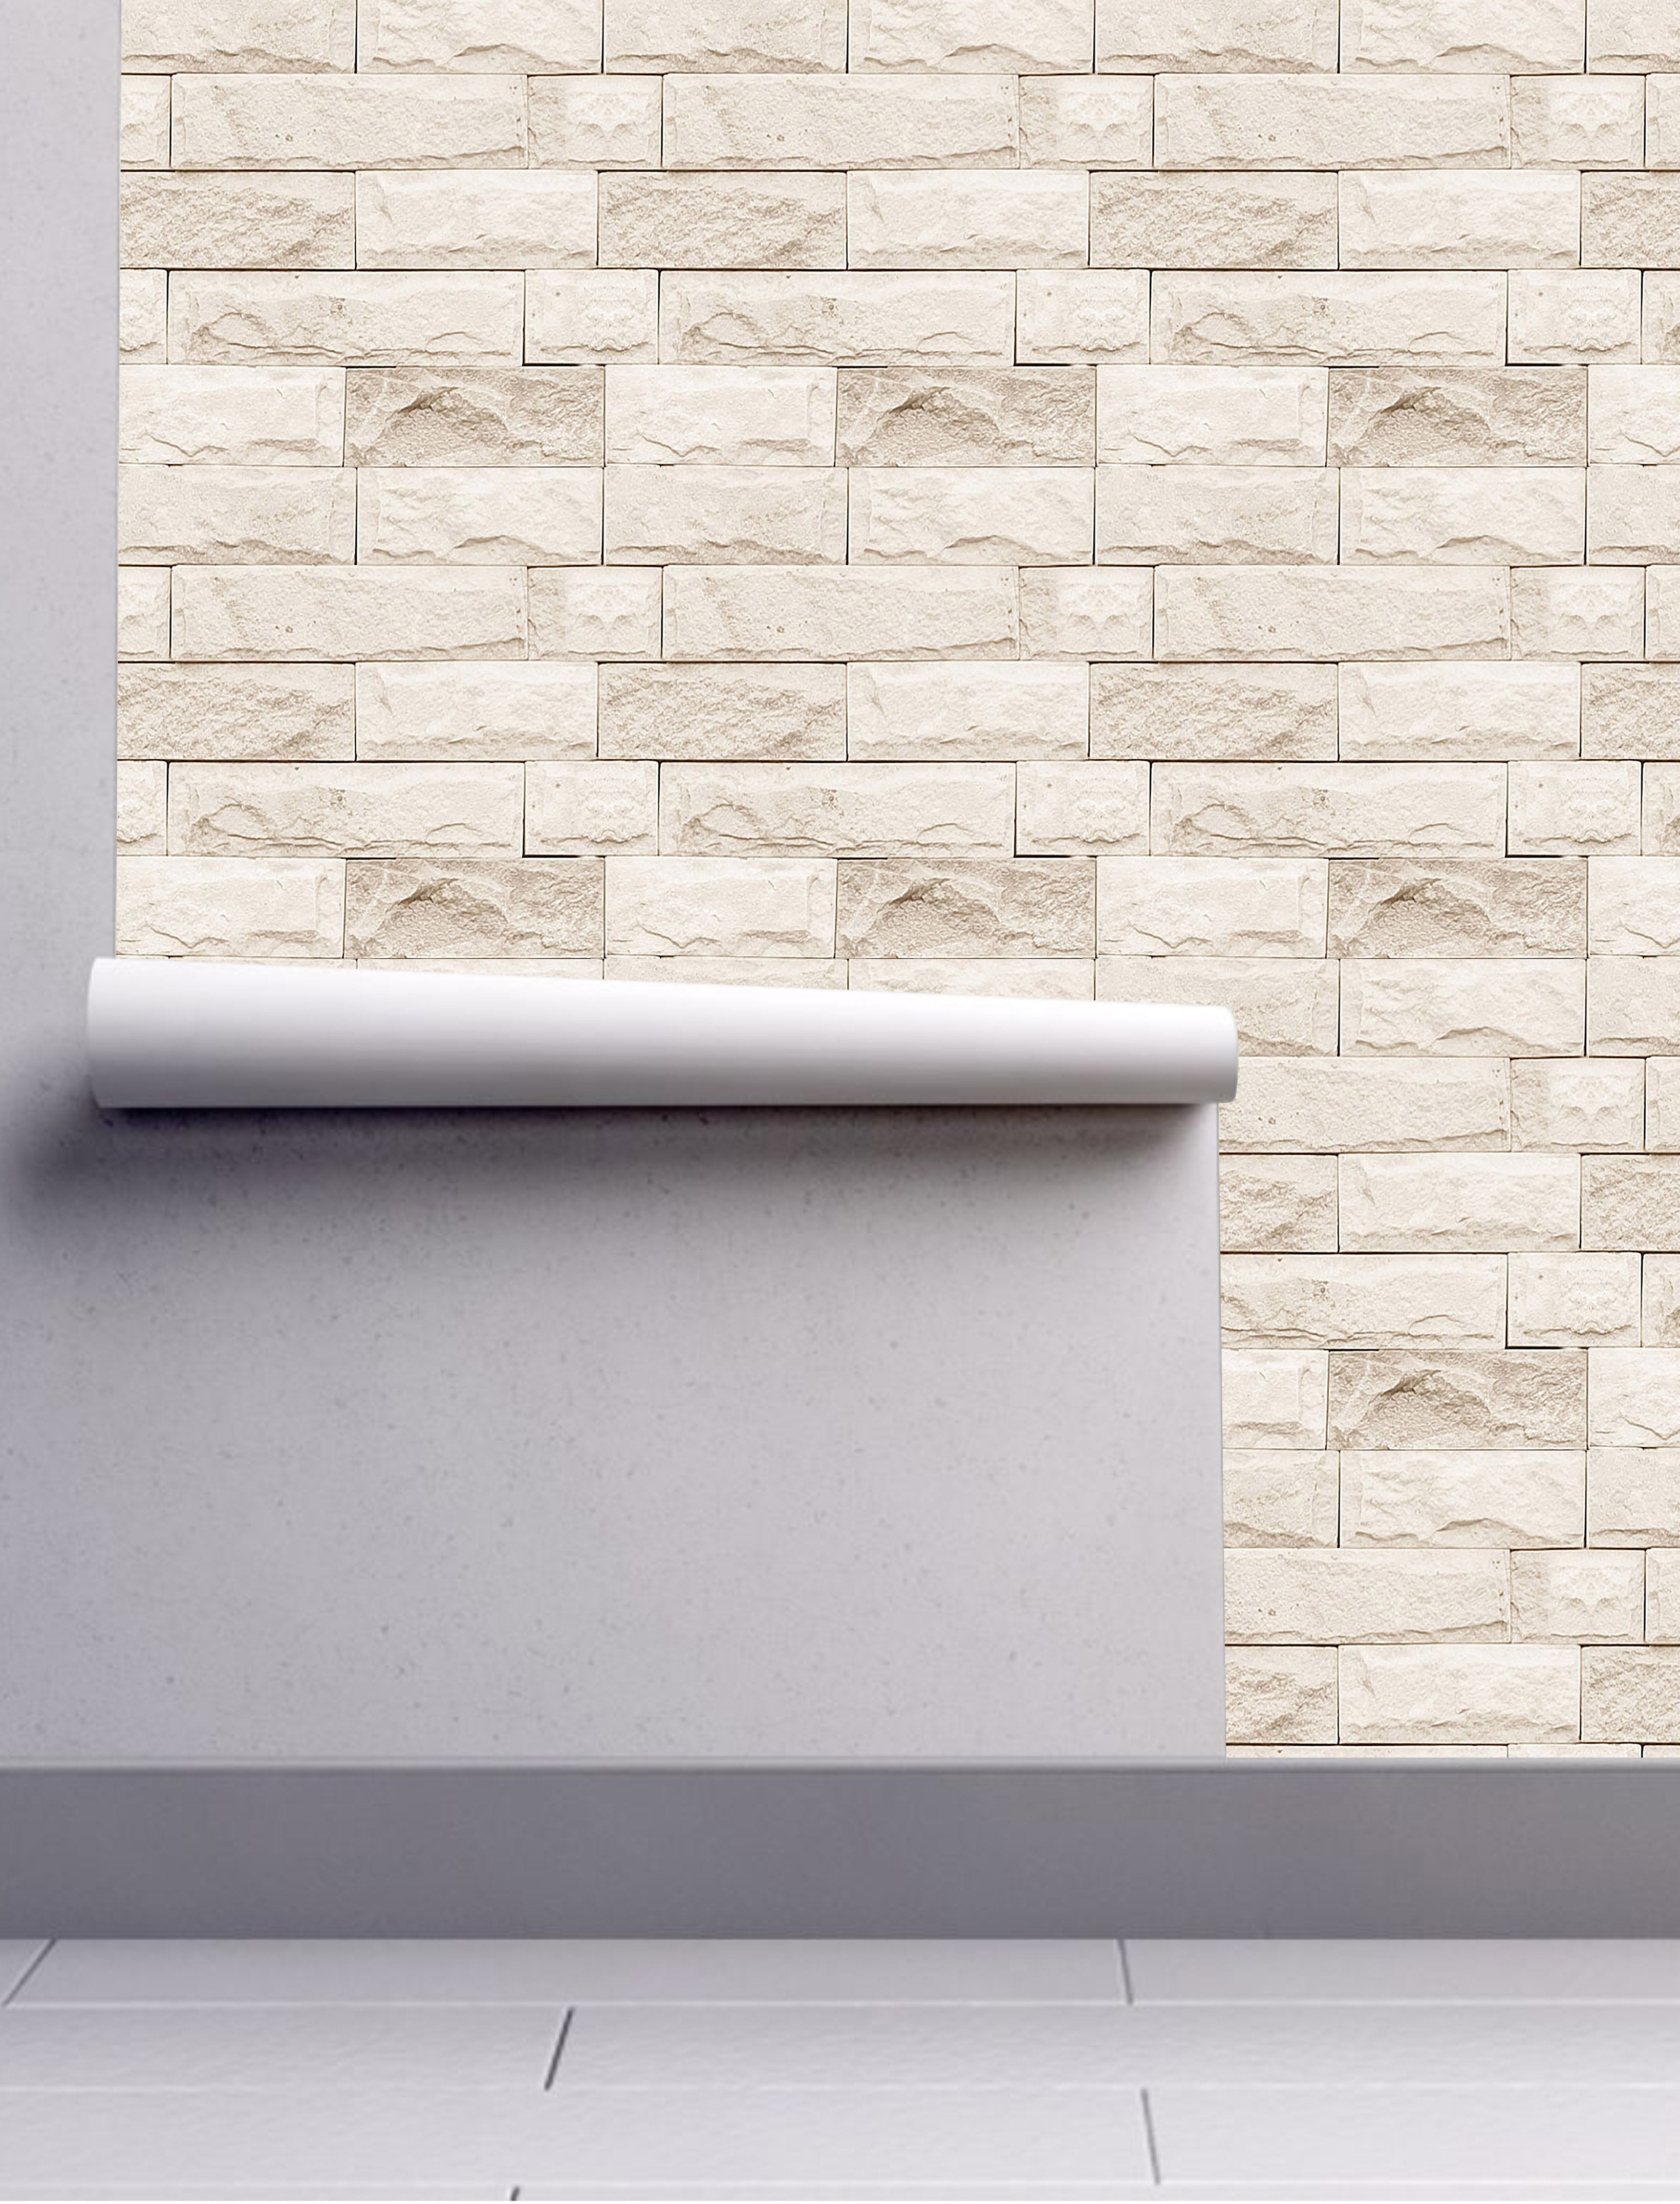 Bricks Texture